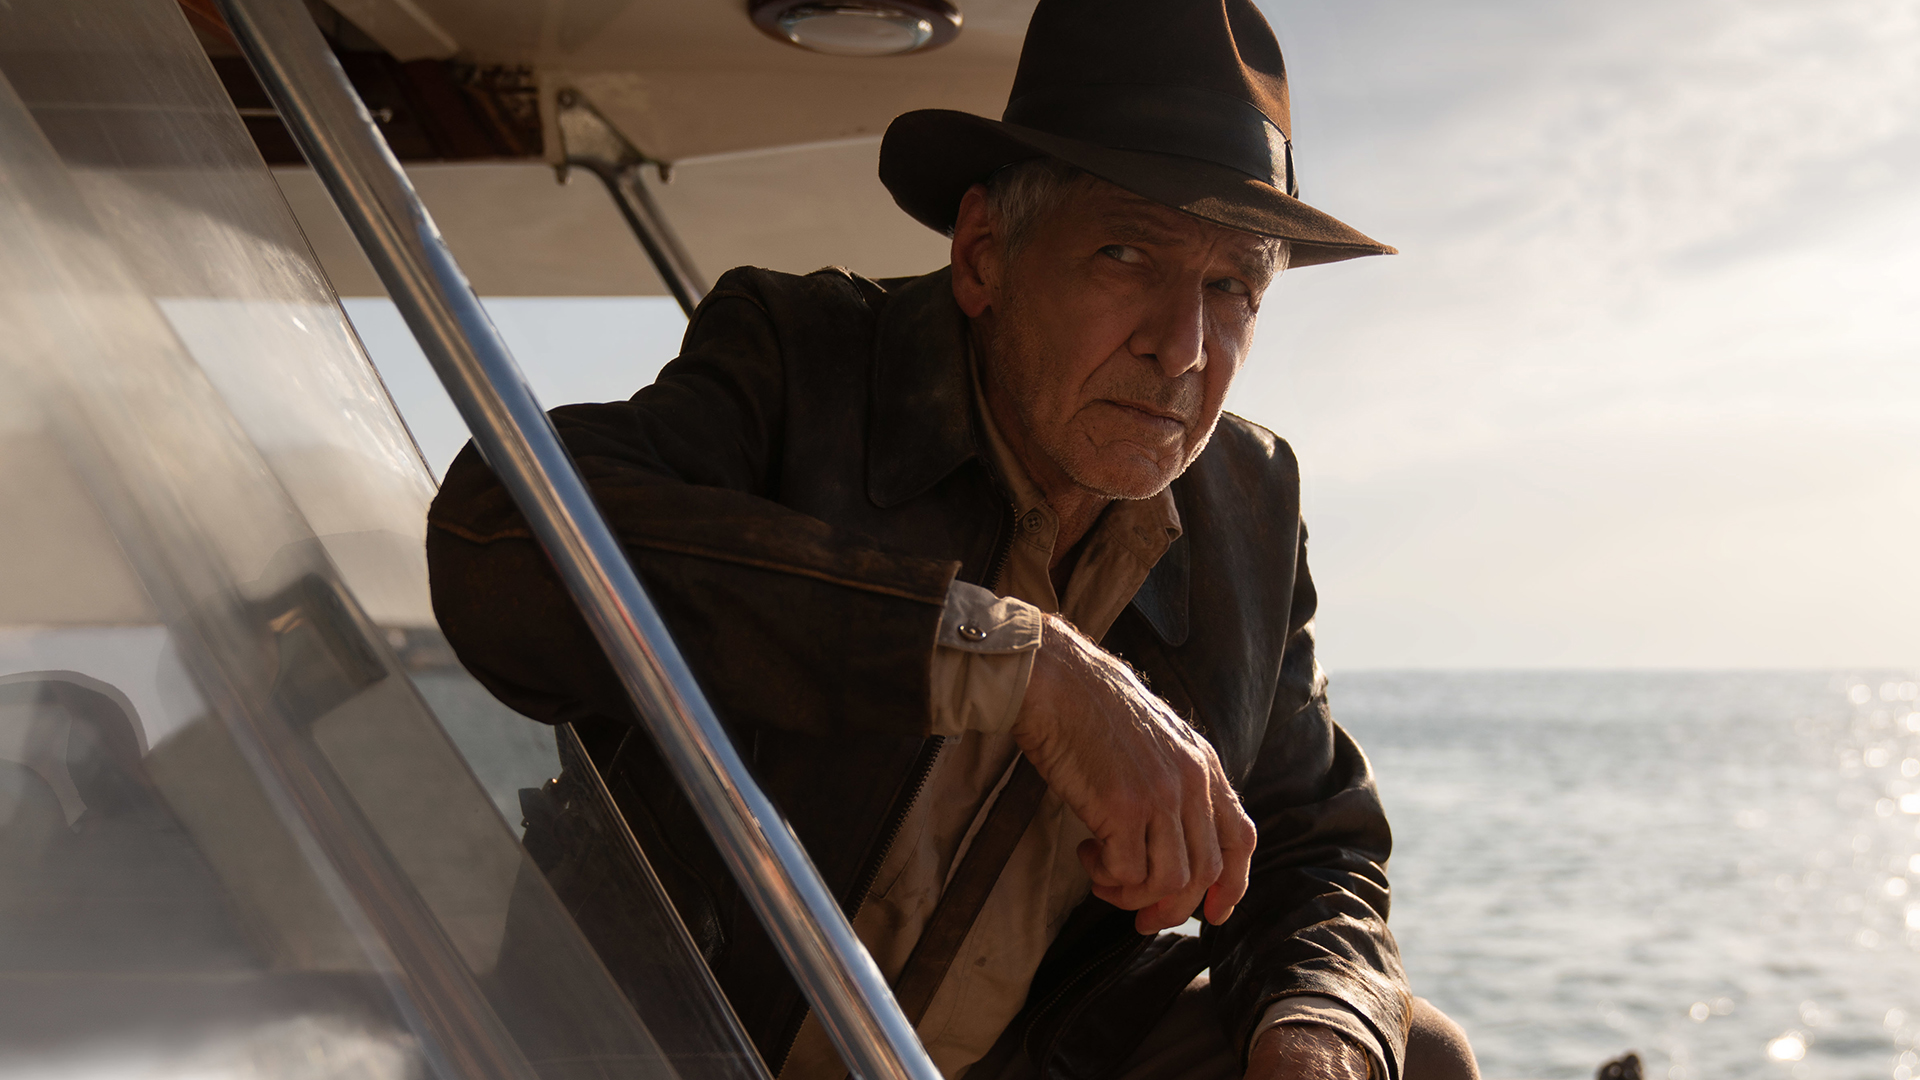 Indiana Jones sa vracia v novom filme. Kto ho vlastne vymyslel a koľko filmov sme s ním už dostali?